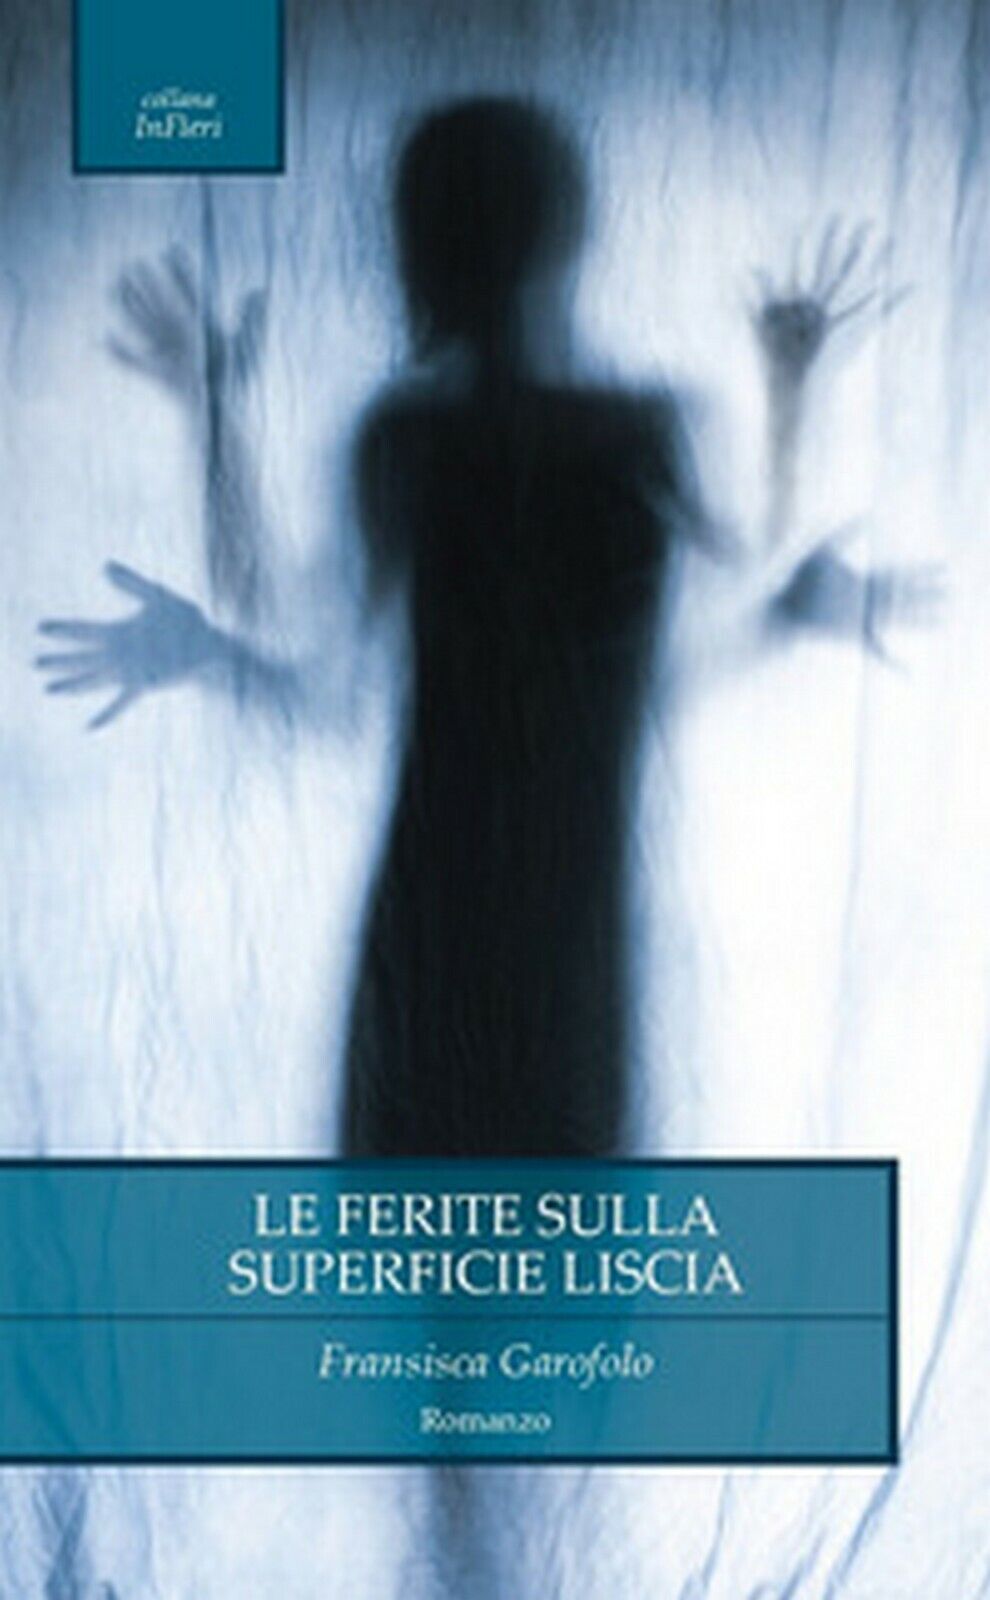 Le ferite sulla superficie liscia, Fransisca Garofolo,  2020,  Chance Edizioni libro usato